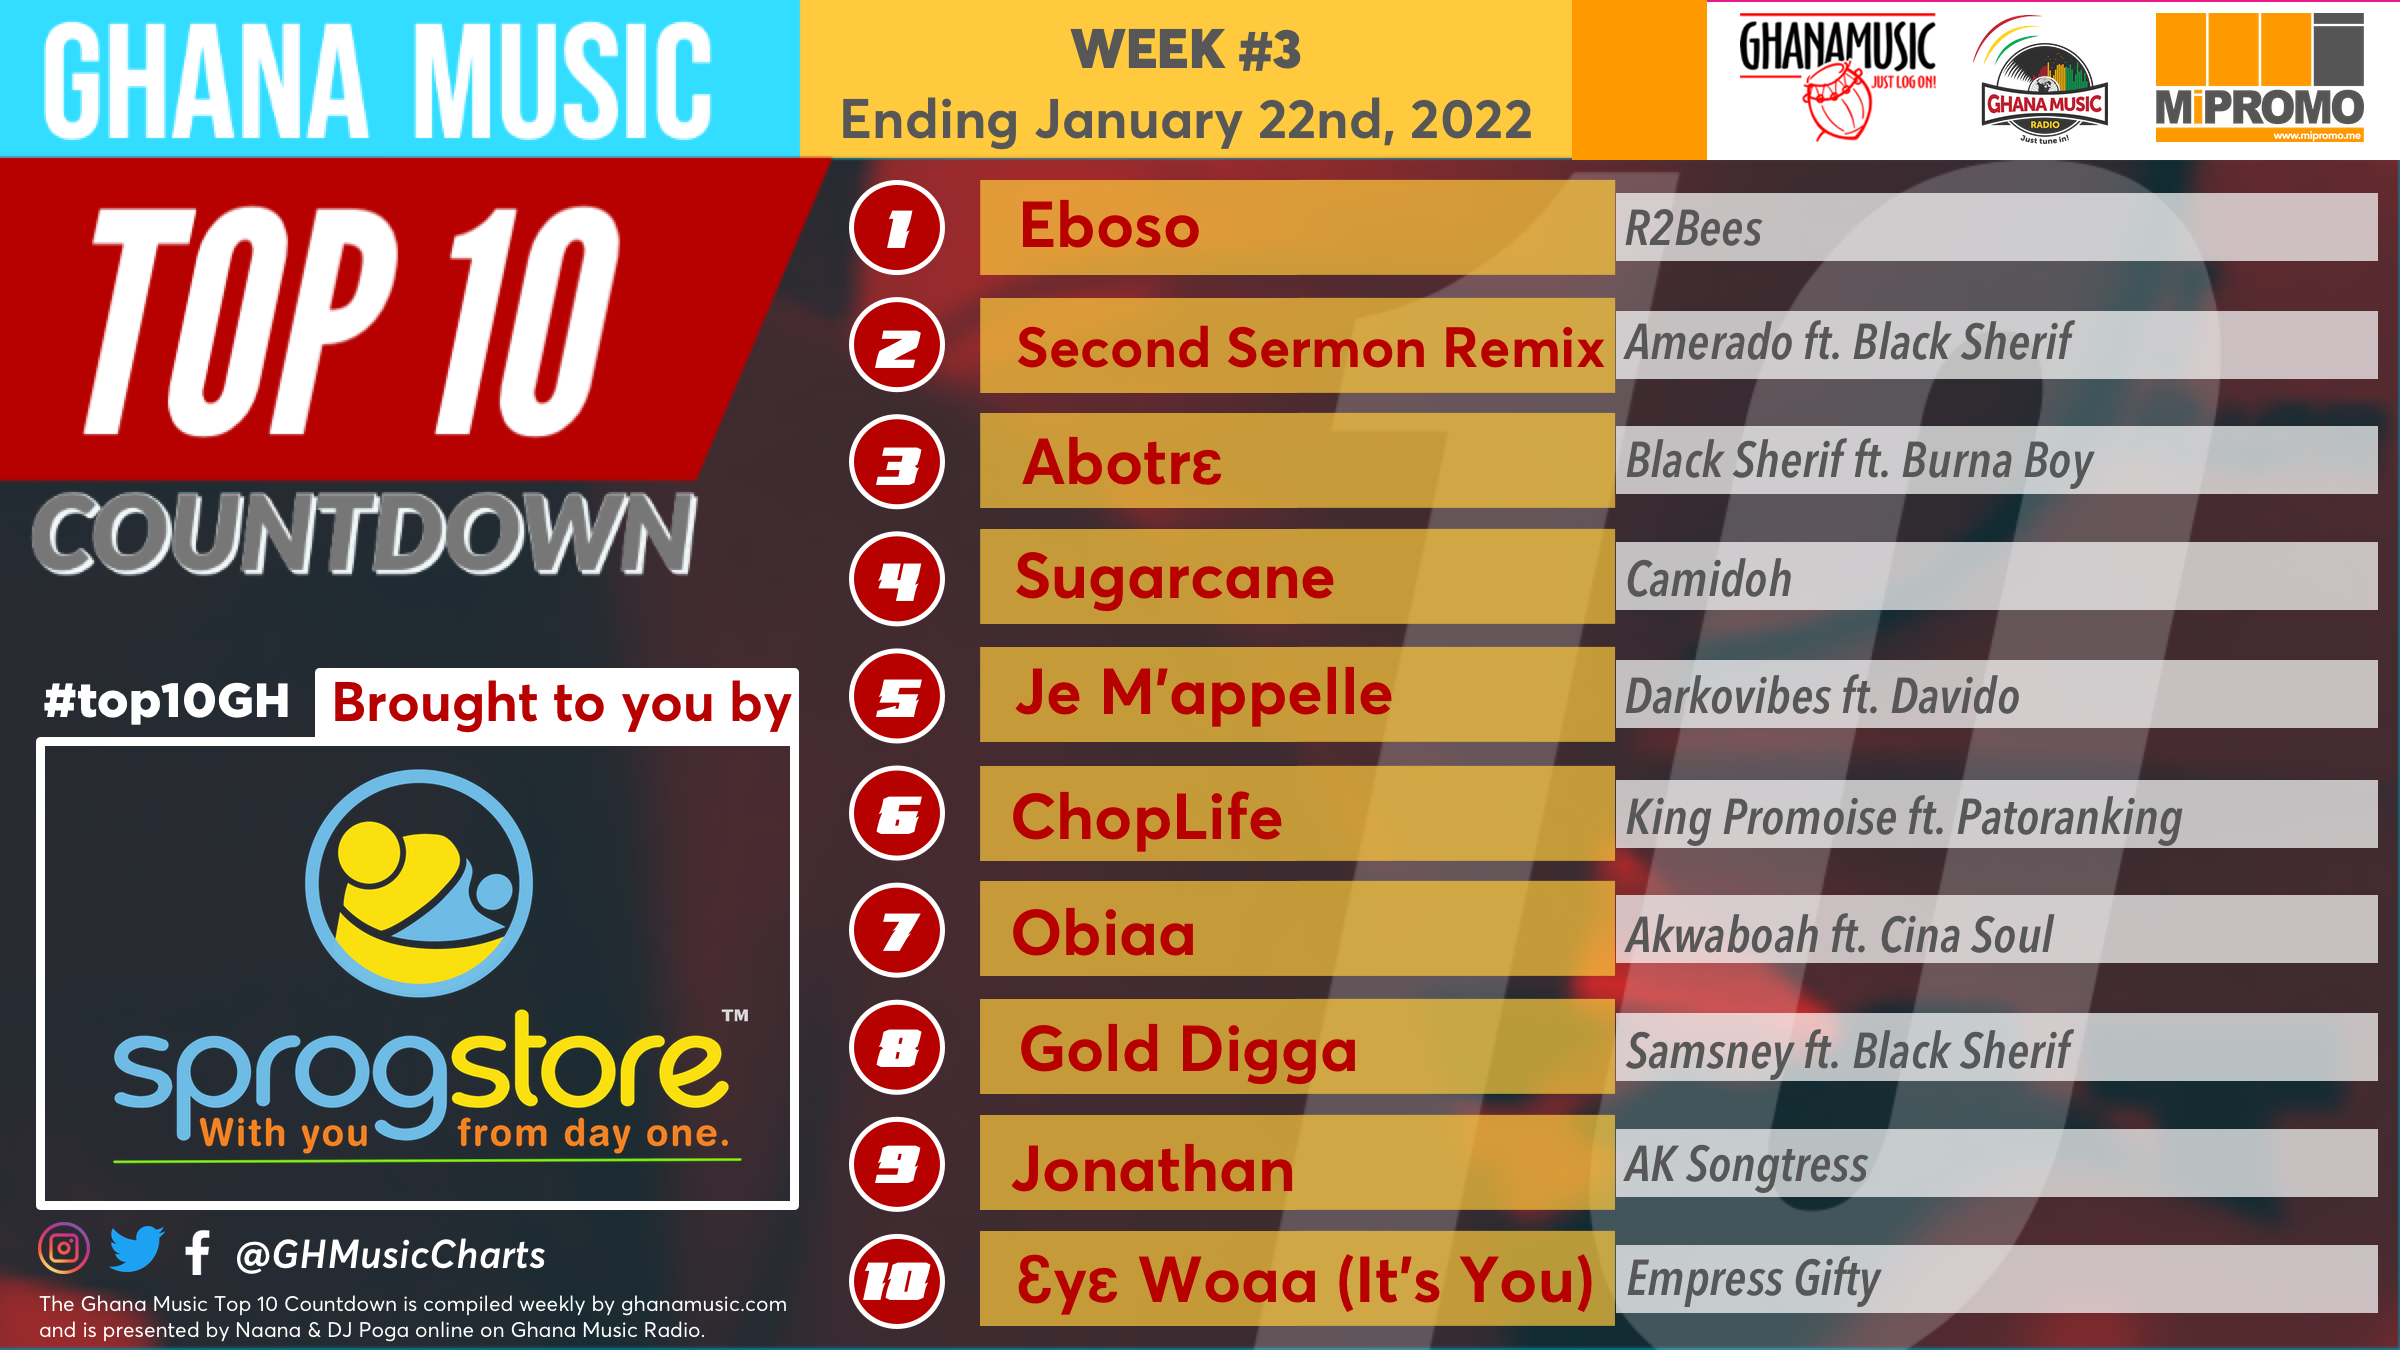 2022 Week 3: Ghana Music Top 10 Countdown